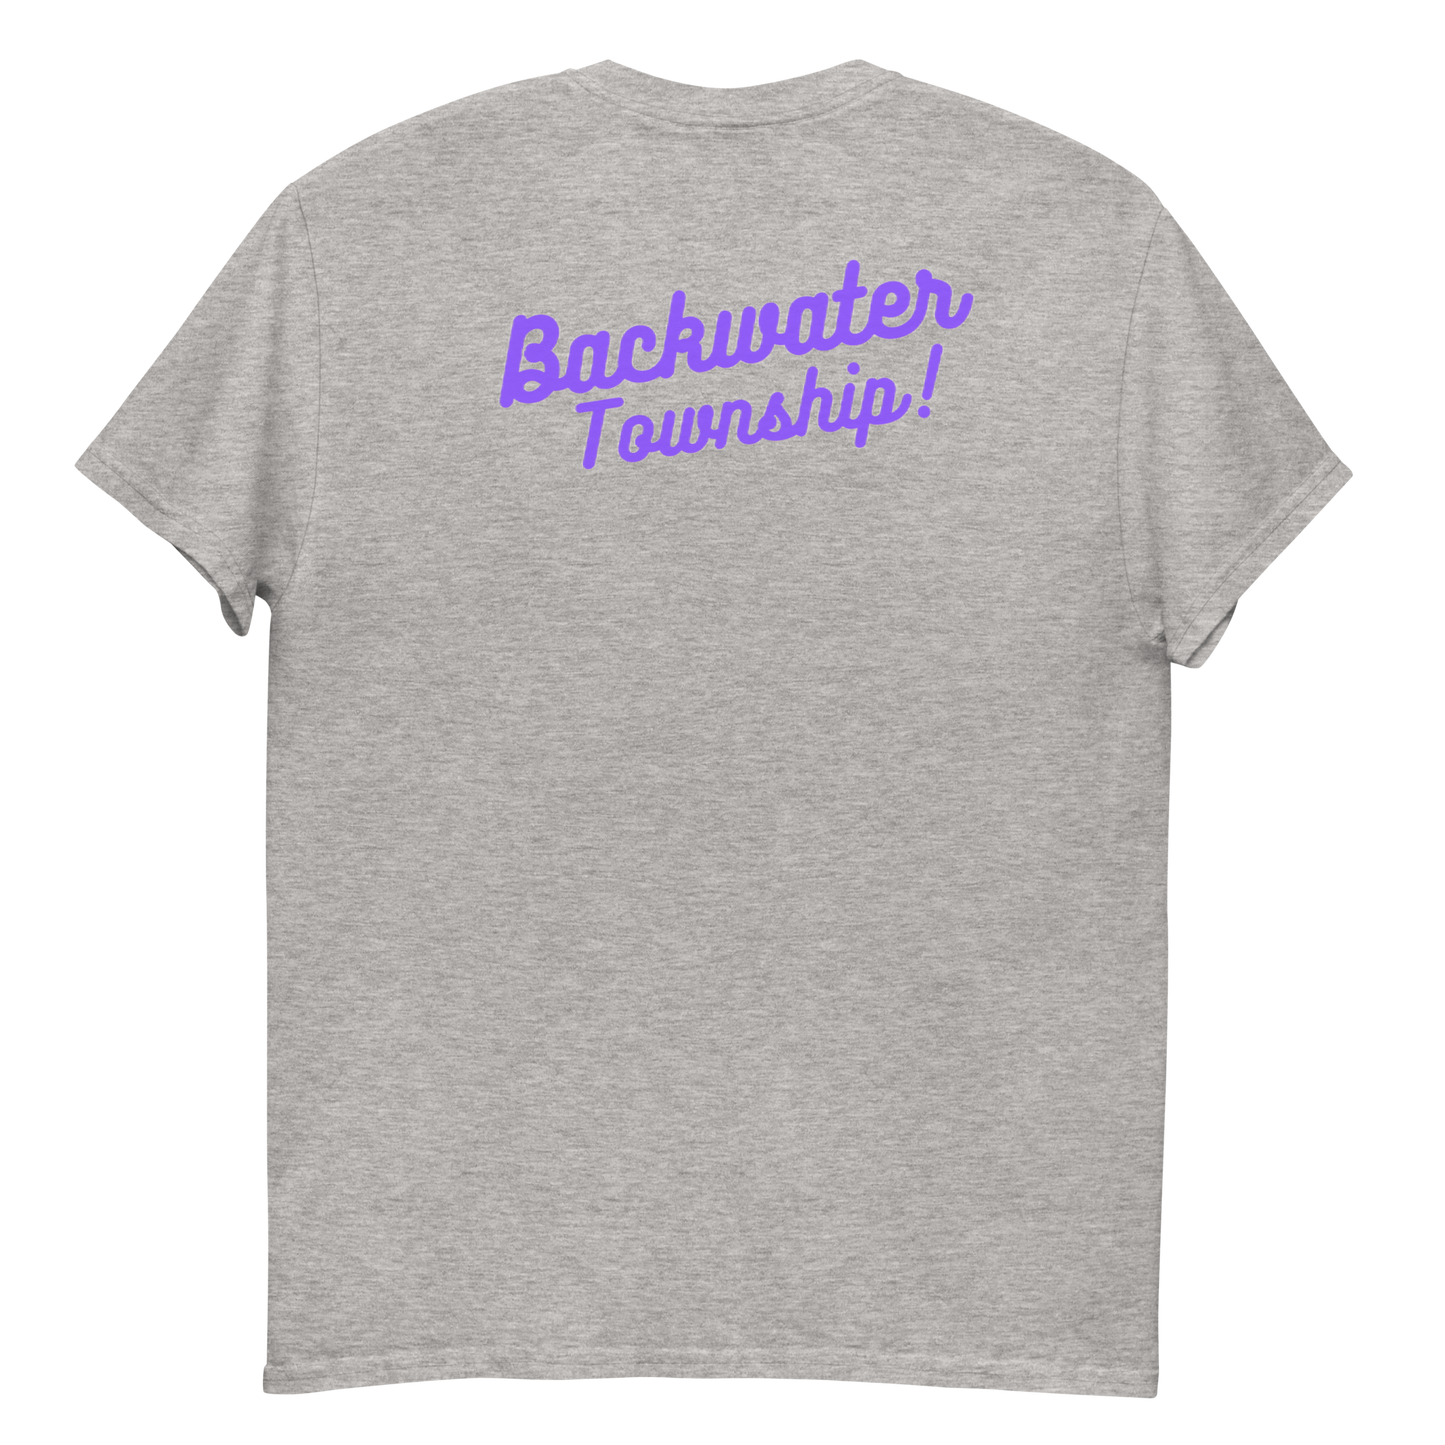 Backwater Township "II" T-Shirt